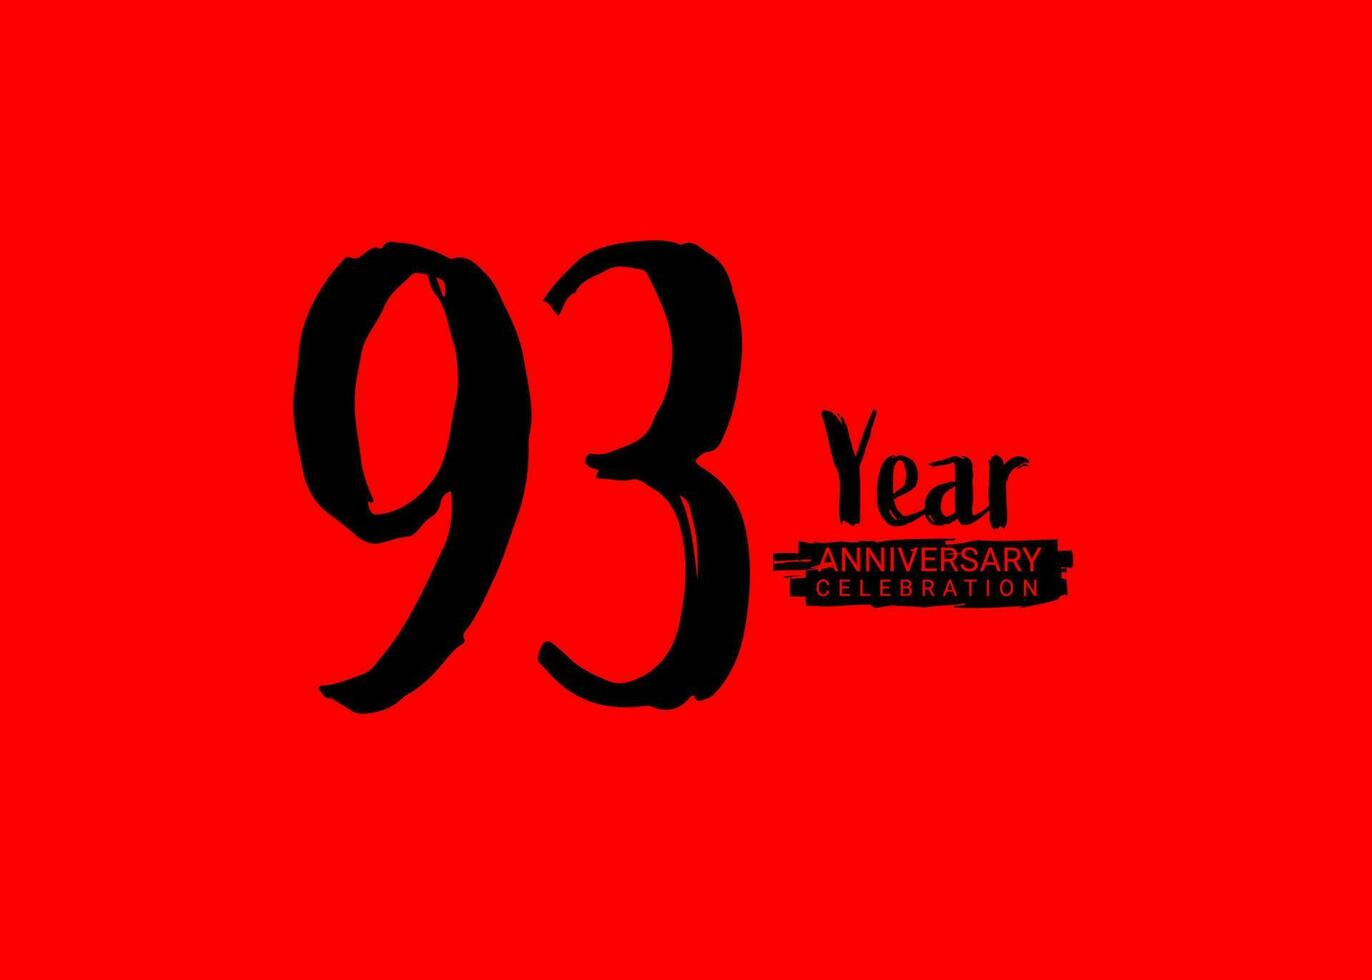 93 Jahre Jahrestag Feier Logo auf rot Hintergrund, 93 Nummer Logo Entwurf,93 Geburtstag Logo, Logo Jubiläum, Vektor Jahrestag zum Feier, Poster, Einladung Karte